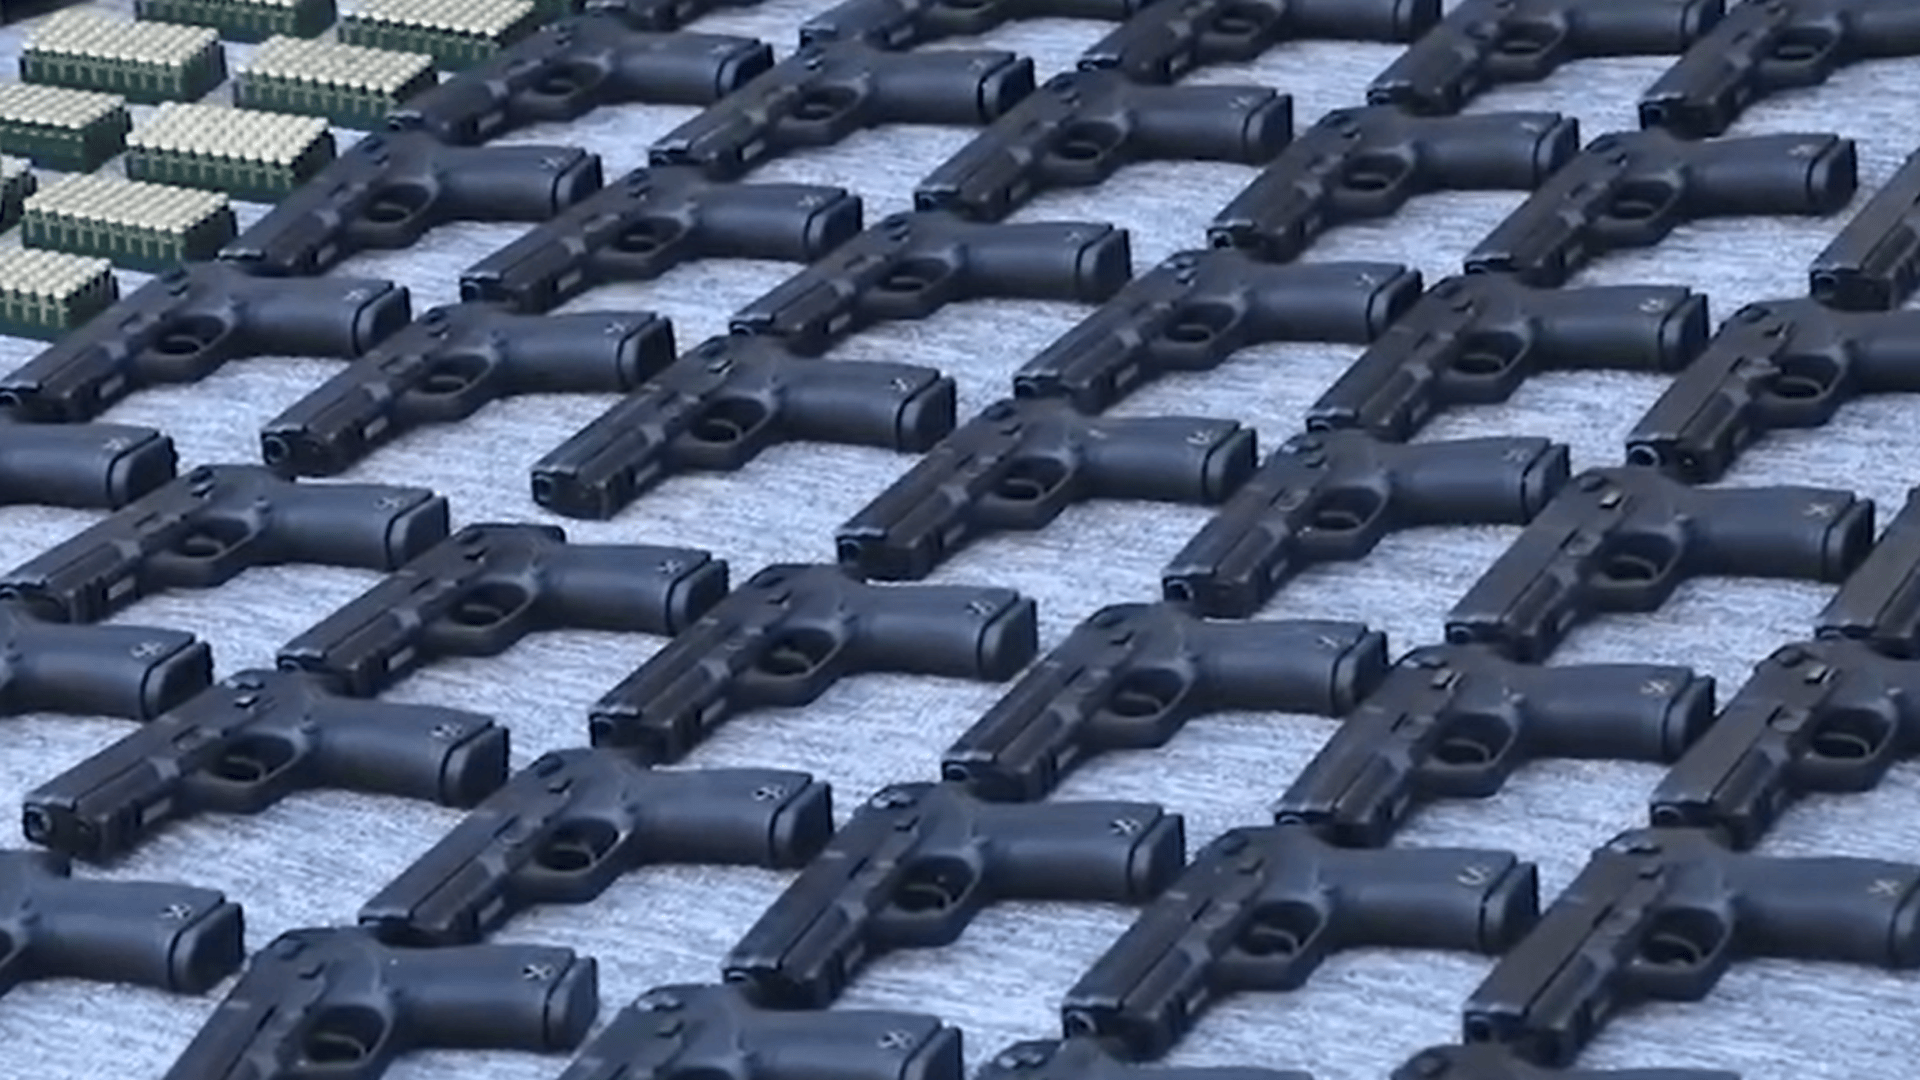 فيديو: 5 تجار أسلحة يسقطون بيد السلطات مع مئات المسدسات والرشاشات والذخائر